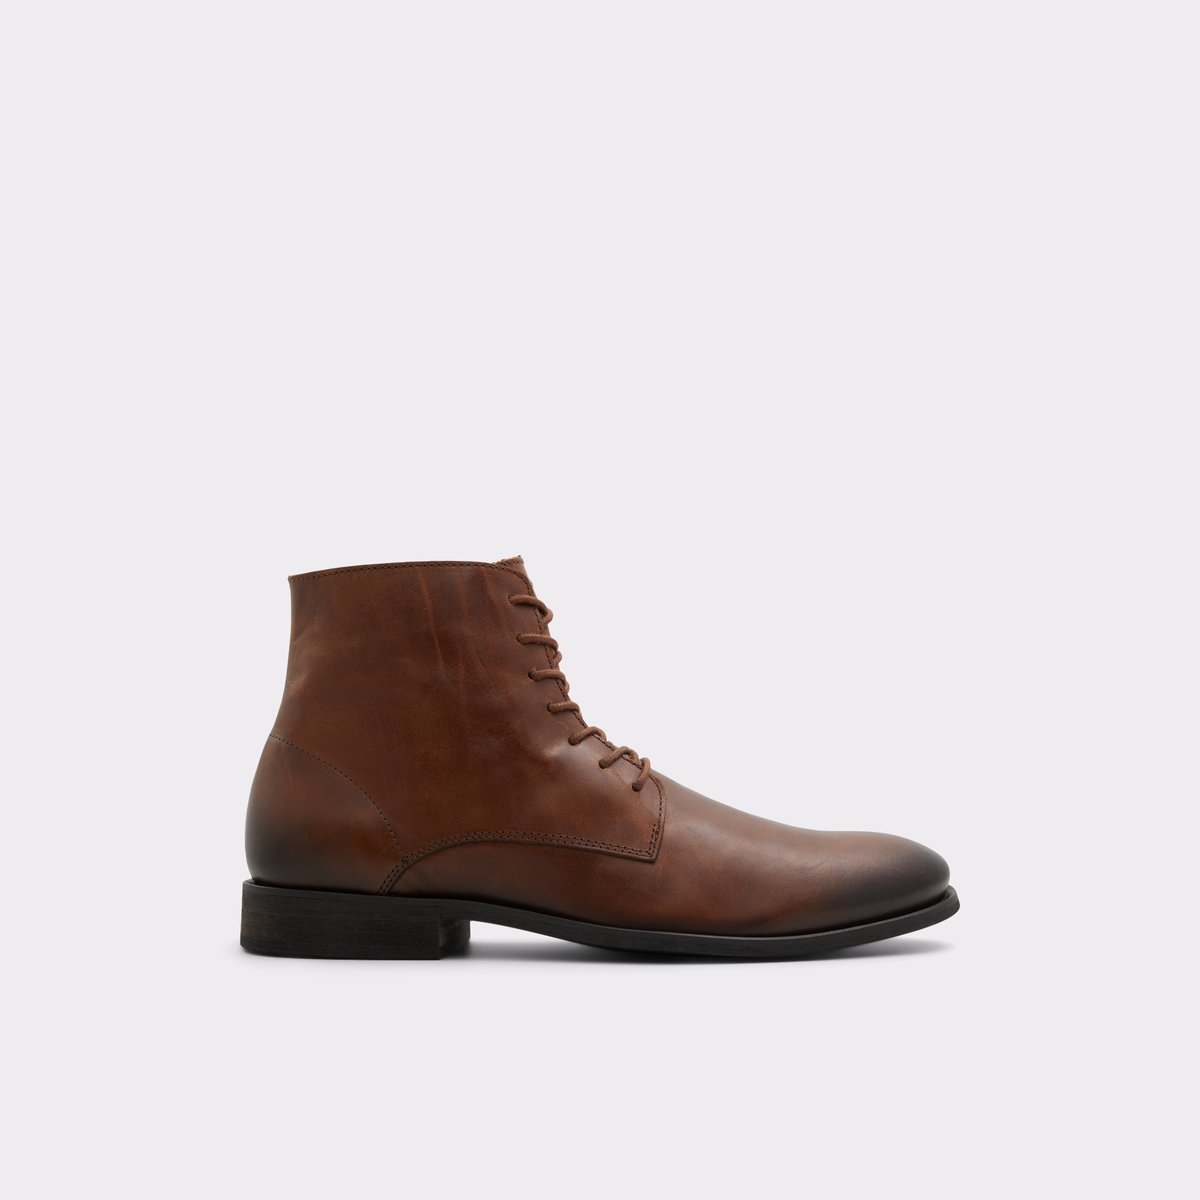 Ignazio Cognac Men's Casual boots | ALDO Canada